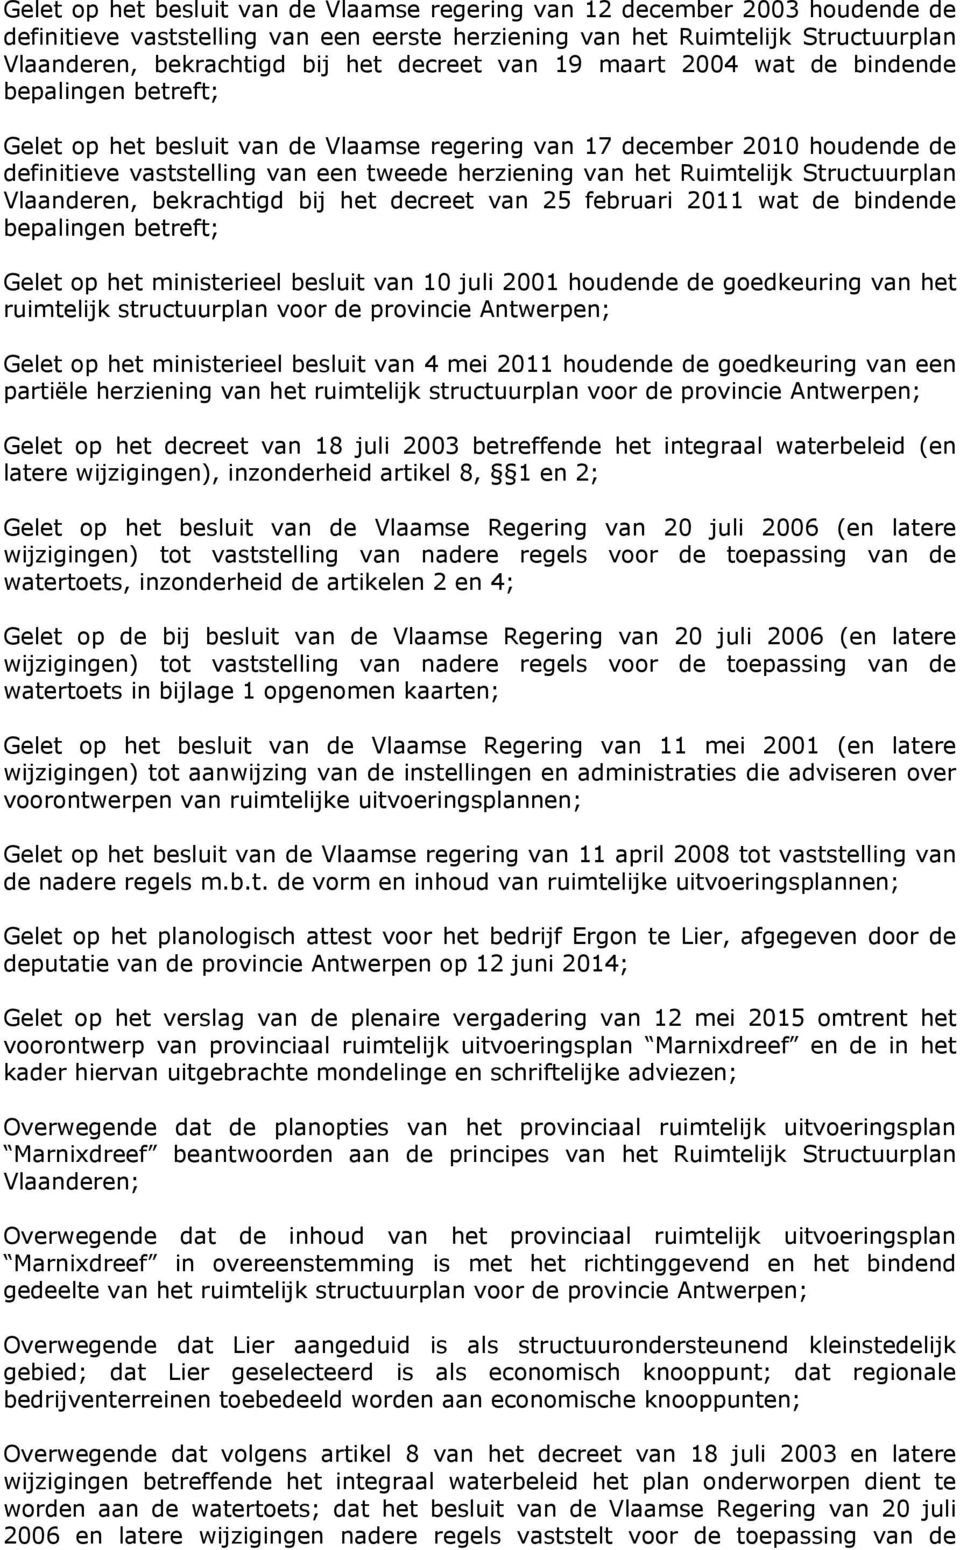 Ruimtelijk Structuurplan Vlaanderen, bekrachtigd bij het decreet van 25 februari 2011 wat de bindende bepalingen betreft; Gelet op het ministerieel besluit van 10 juli 2001 houdende de goedkeuring